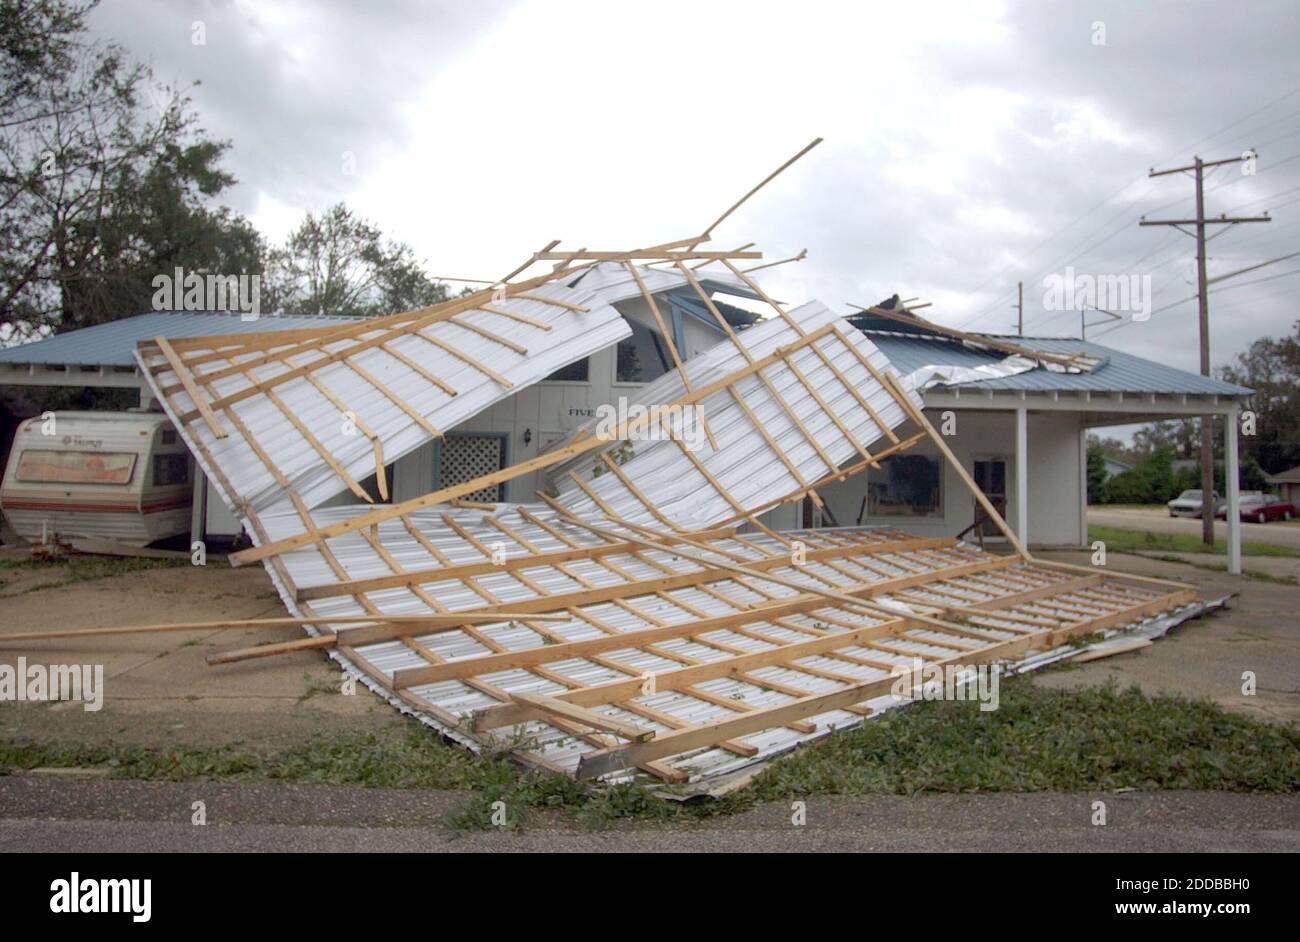 NO HAY PELÍCULA, NO HAY VÍDEO, NO hay televisión, NO HAY DOCUMENTAL - el huracán Iván creó daño en el sur de Alabama el 16 de septiembre de 2004, con vientos fuertes que arrancaron los techos de las estructuras. Foto de David Swanson/Philadelphia Inquirer/KRT/ABACA. Foto de stock